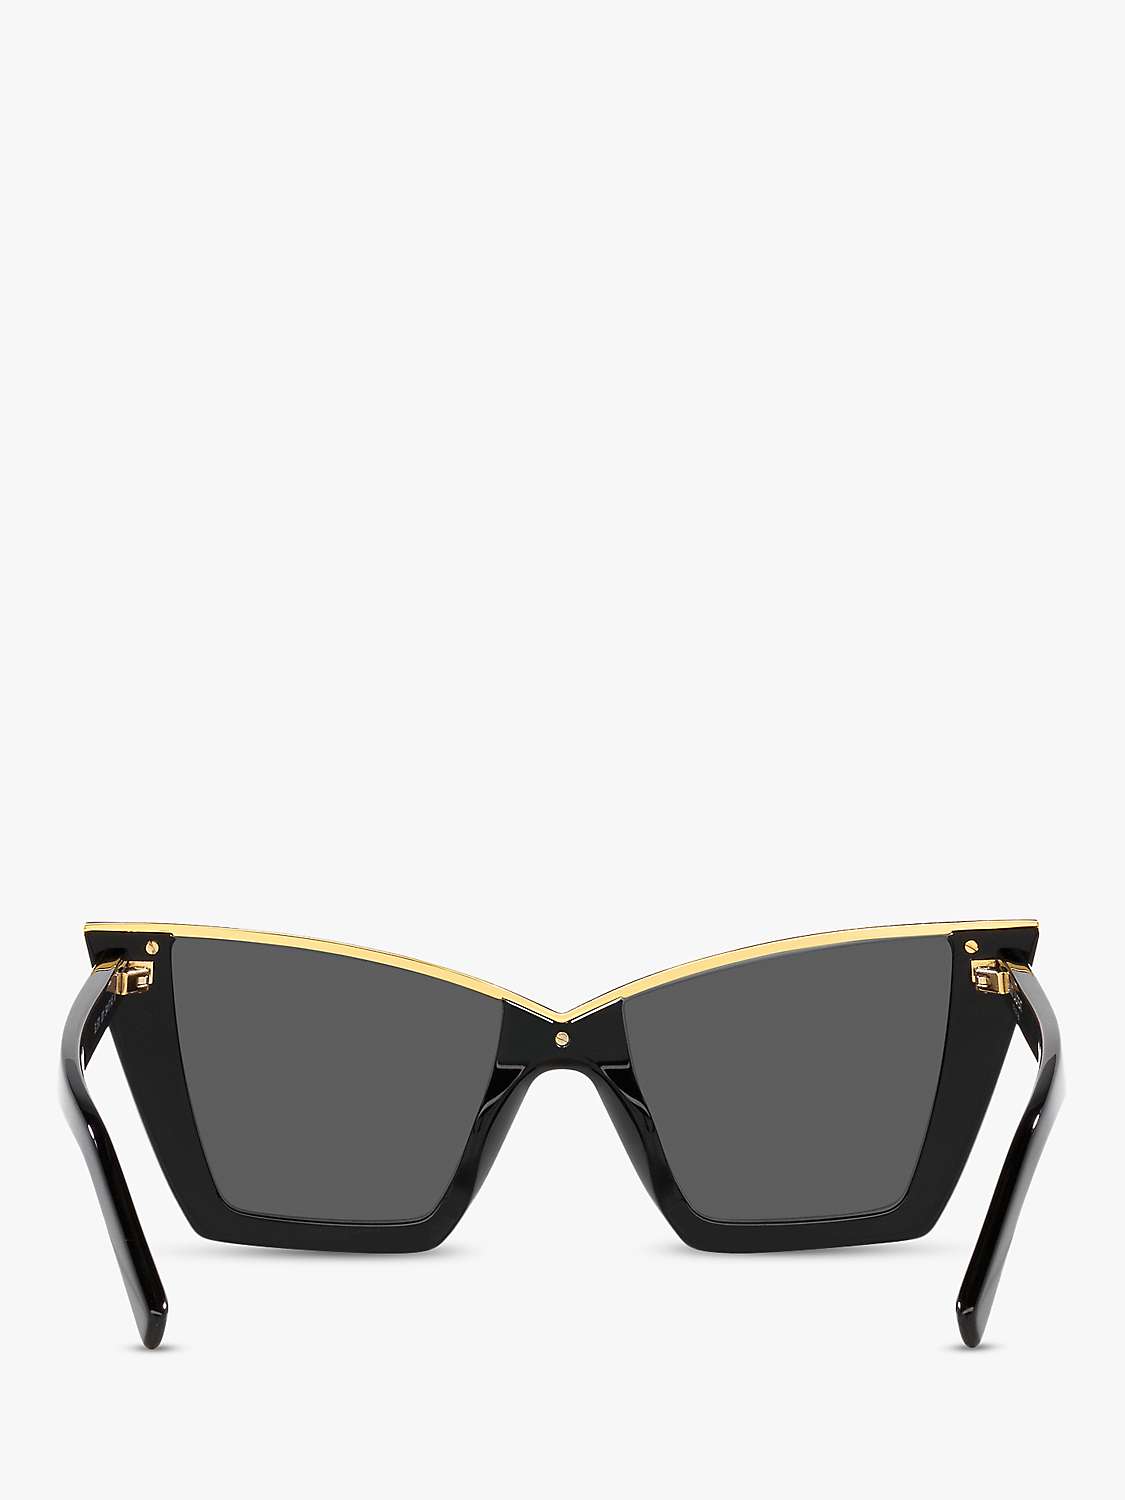 Buy Yves Saint Laurent YS000435 Women's Cat Eye Sunglasses Online at johnlewis.com